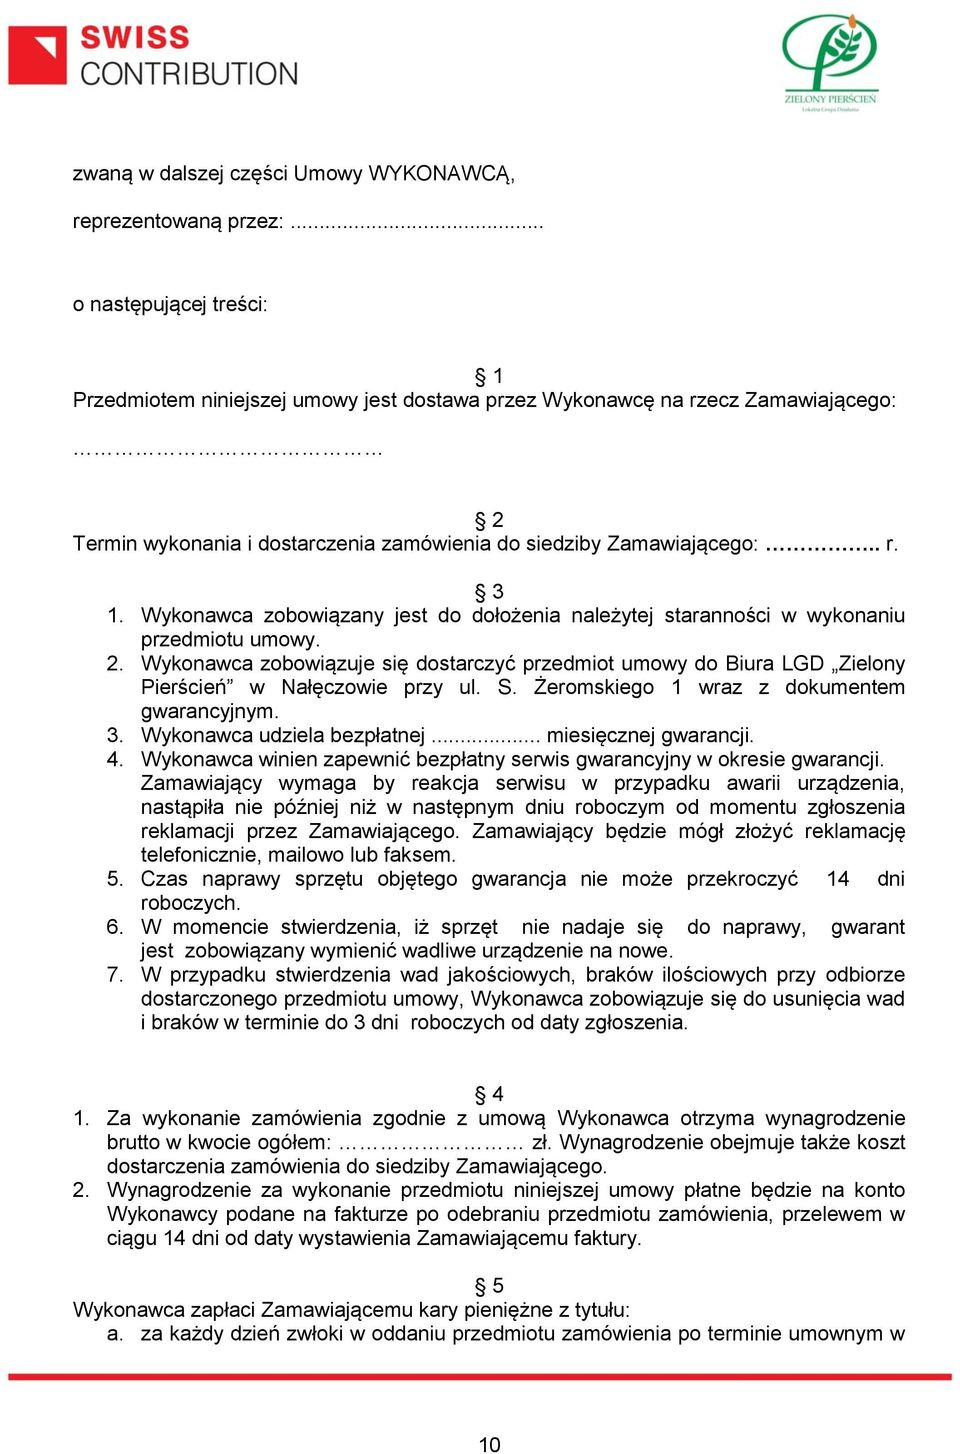 Wykonawca zobowiązany jest do dołożenia należytej staranności w wykonaniu przedmiotu umowy. 2. Wykonawca zobowiązuje się dostarczyć przedmiot umowy do Biura LGD Zielony Pierścień w Nałęczowie przy ul.